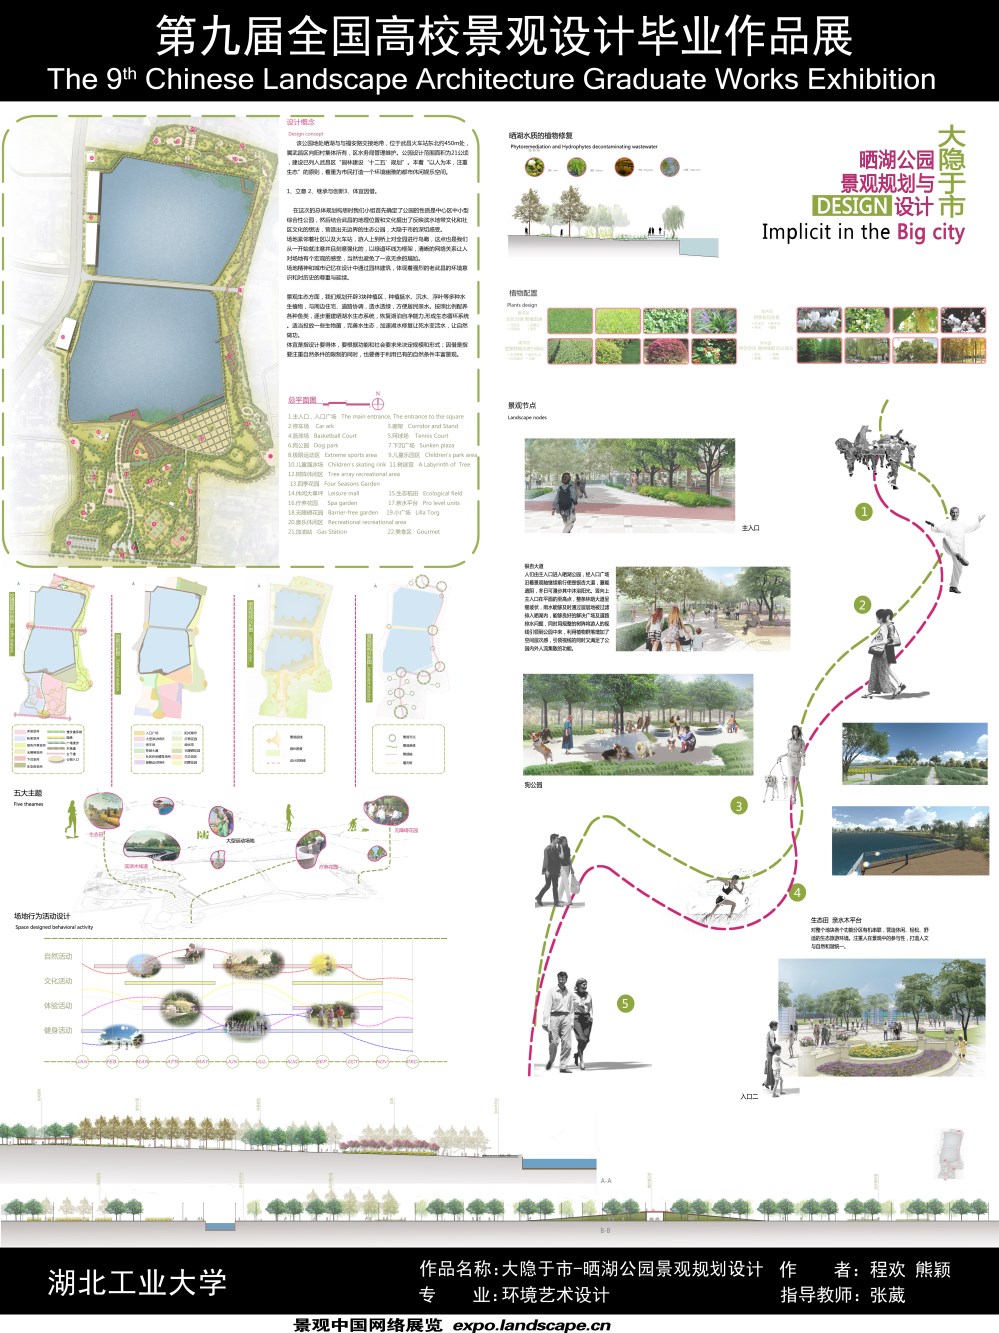 大隐于市-晒湖公园景观规划设计-2